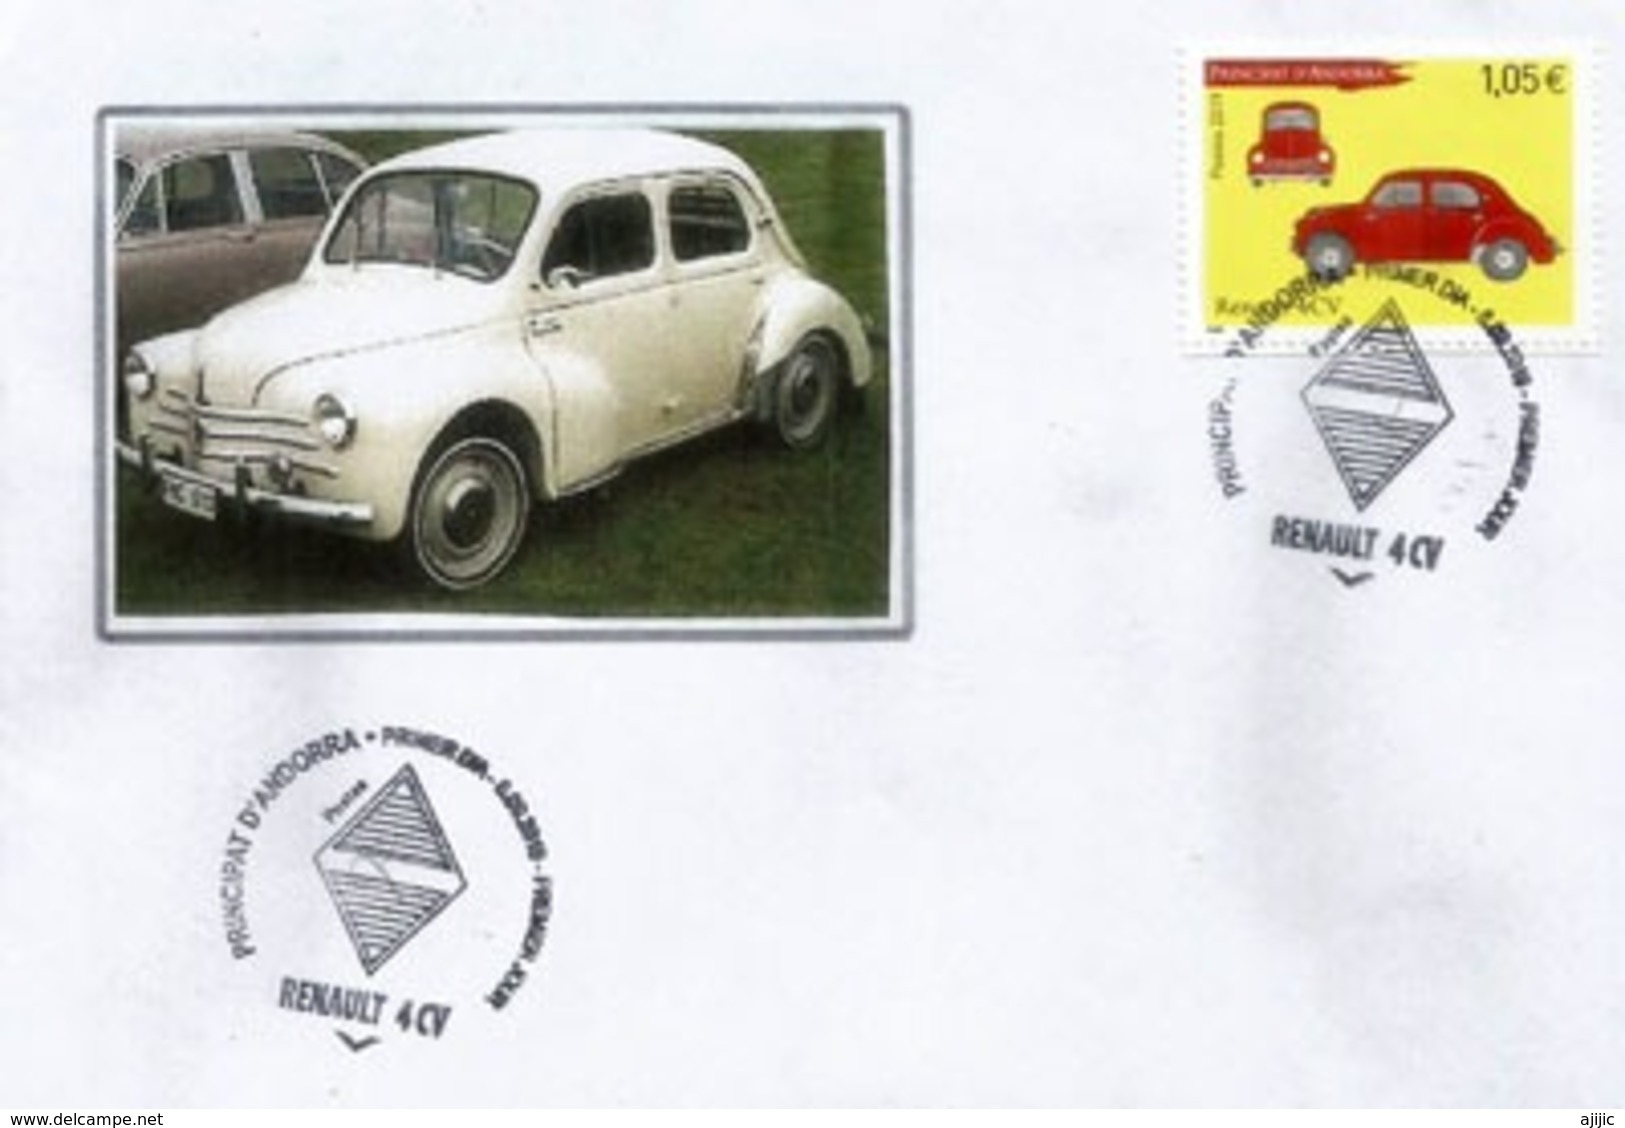 ANDORRA. Renault 4CV, Année 1947. émission Année 2019.  Oblitération Illustrée Losange Renault.  FDC - Lettres & Documents